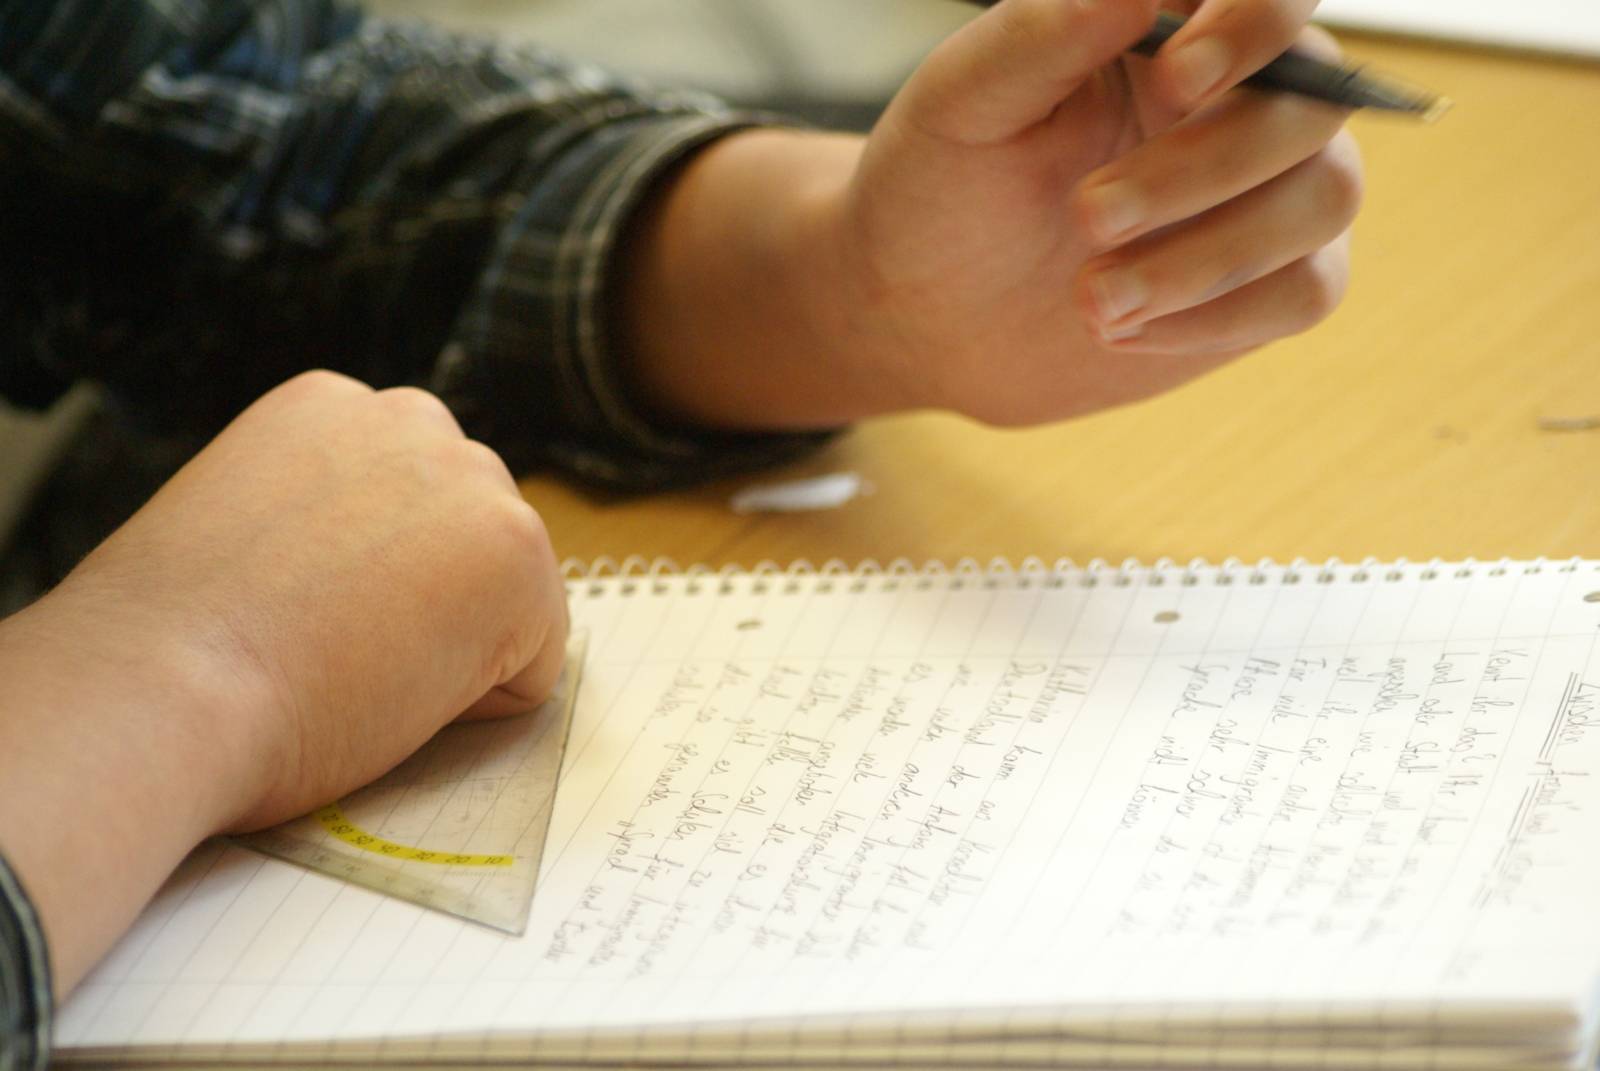 Ein Kind schreibt auf einem Collegeblock. Es hält einen Stift und ein Geodreieck in den Händen.